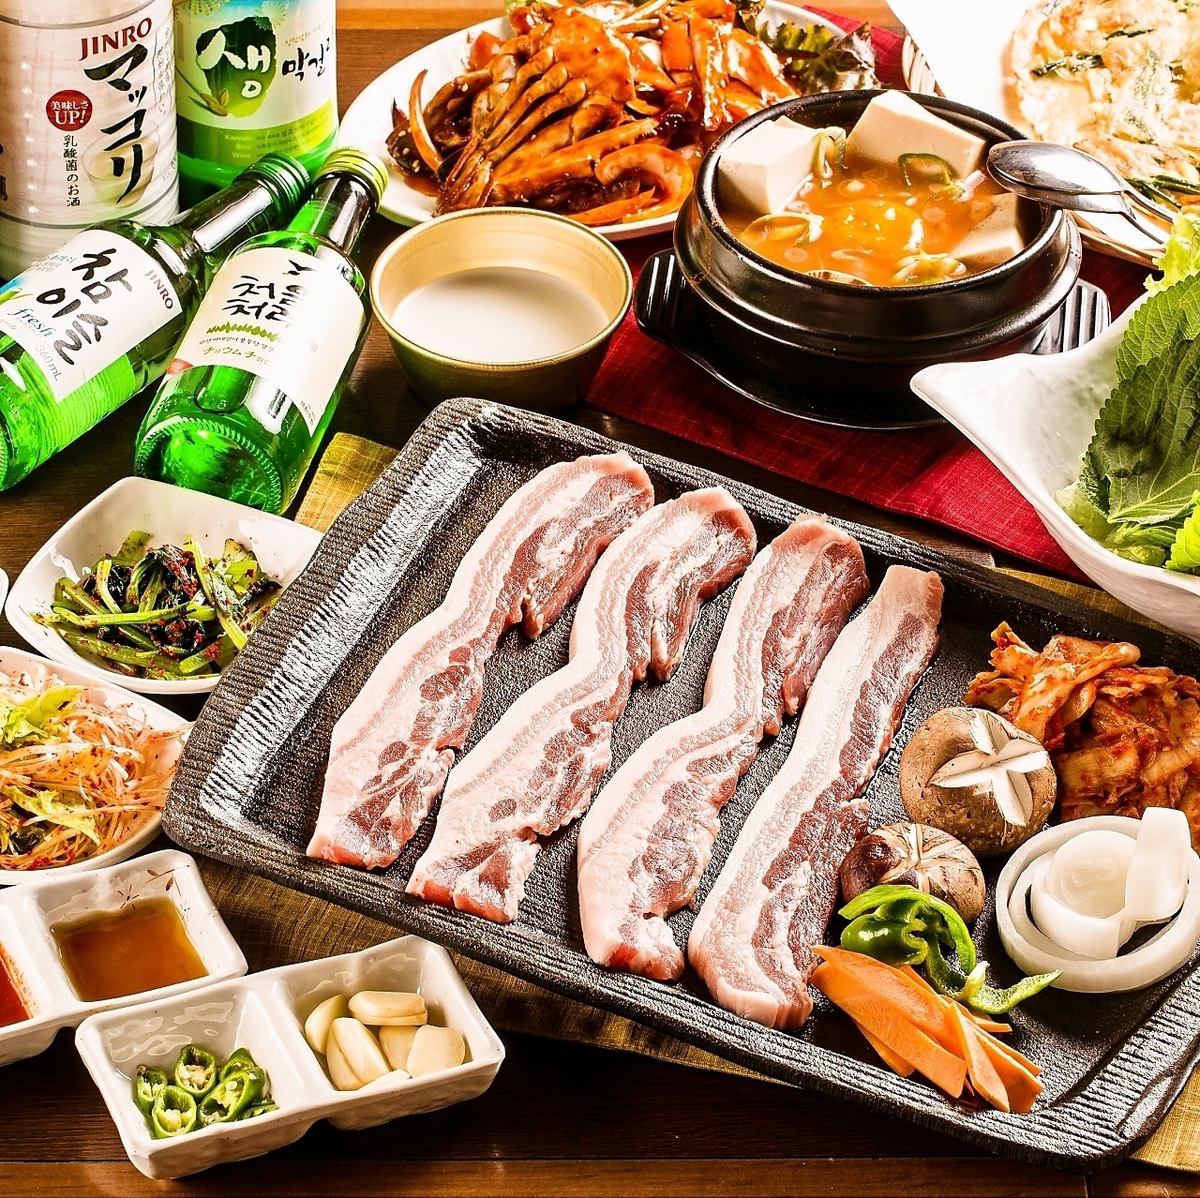 韓國人氣餐廳“Kin-chan”2小時<無限暢飲>五花肉套餐3,500日元